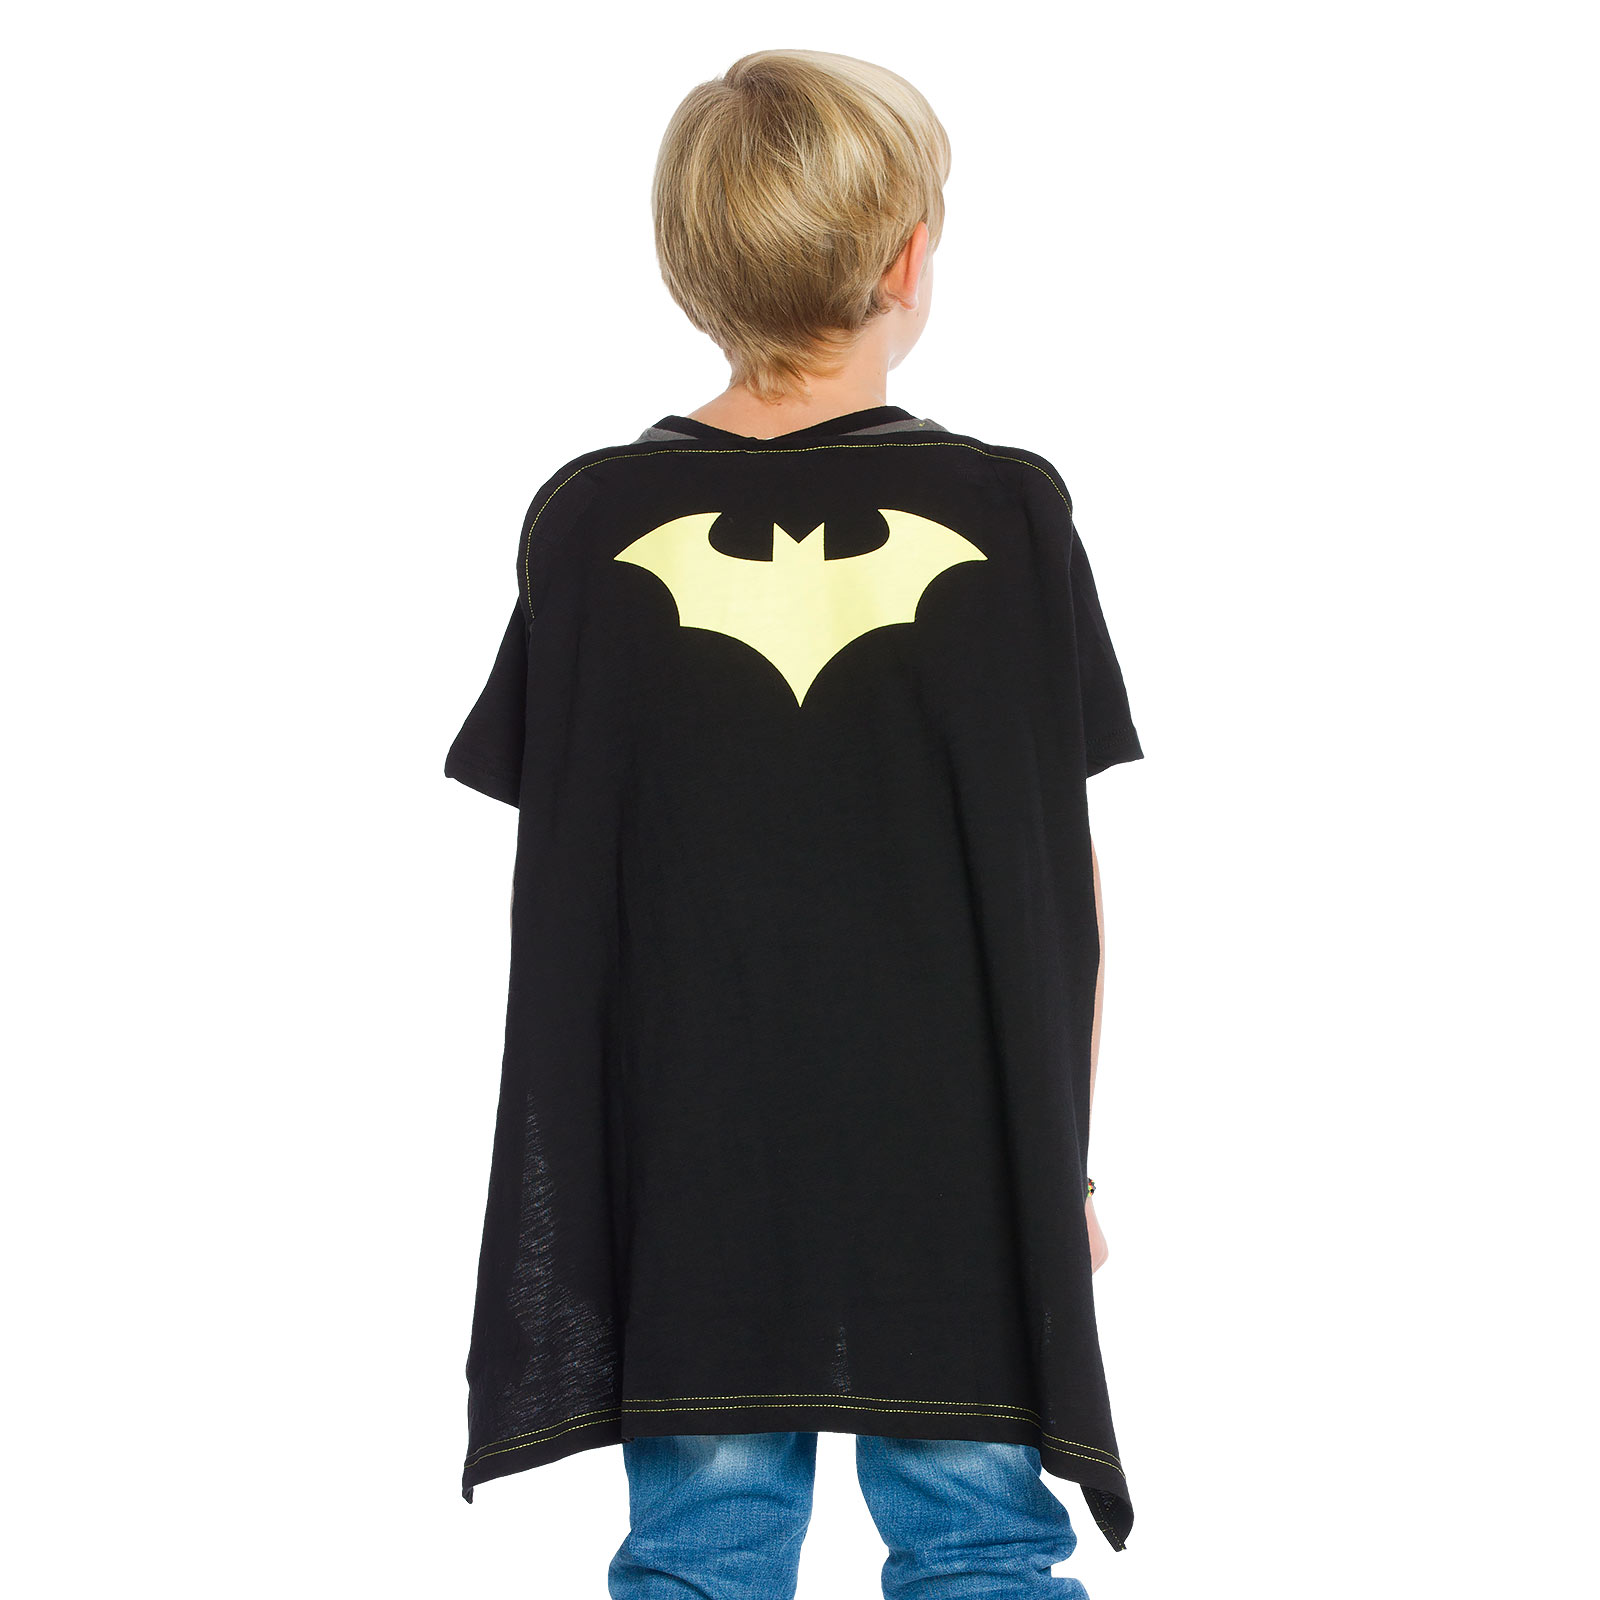 Batman - Kinder T-shirt met Cape zwart